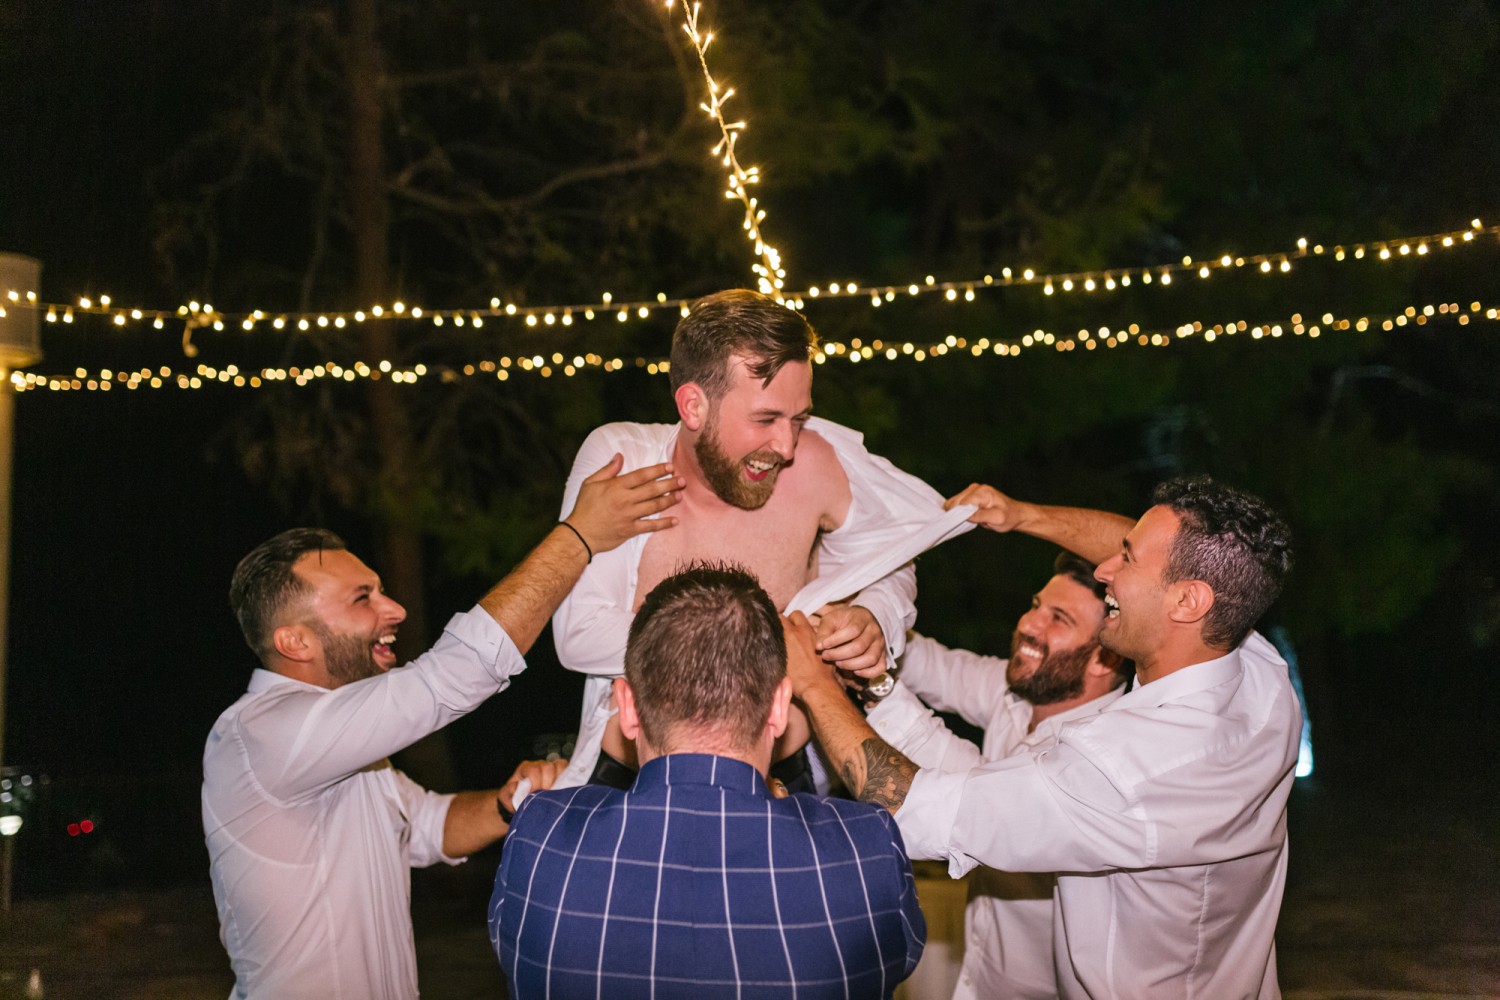 Φωτογραφίες γάμου | Leo & Santra στη Χαλκιδική